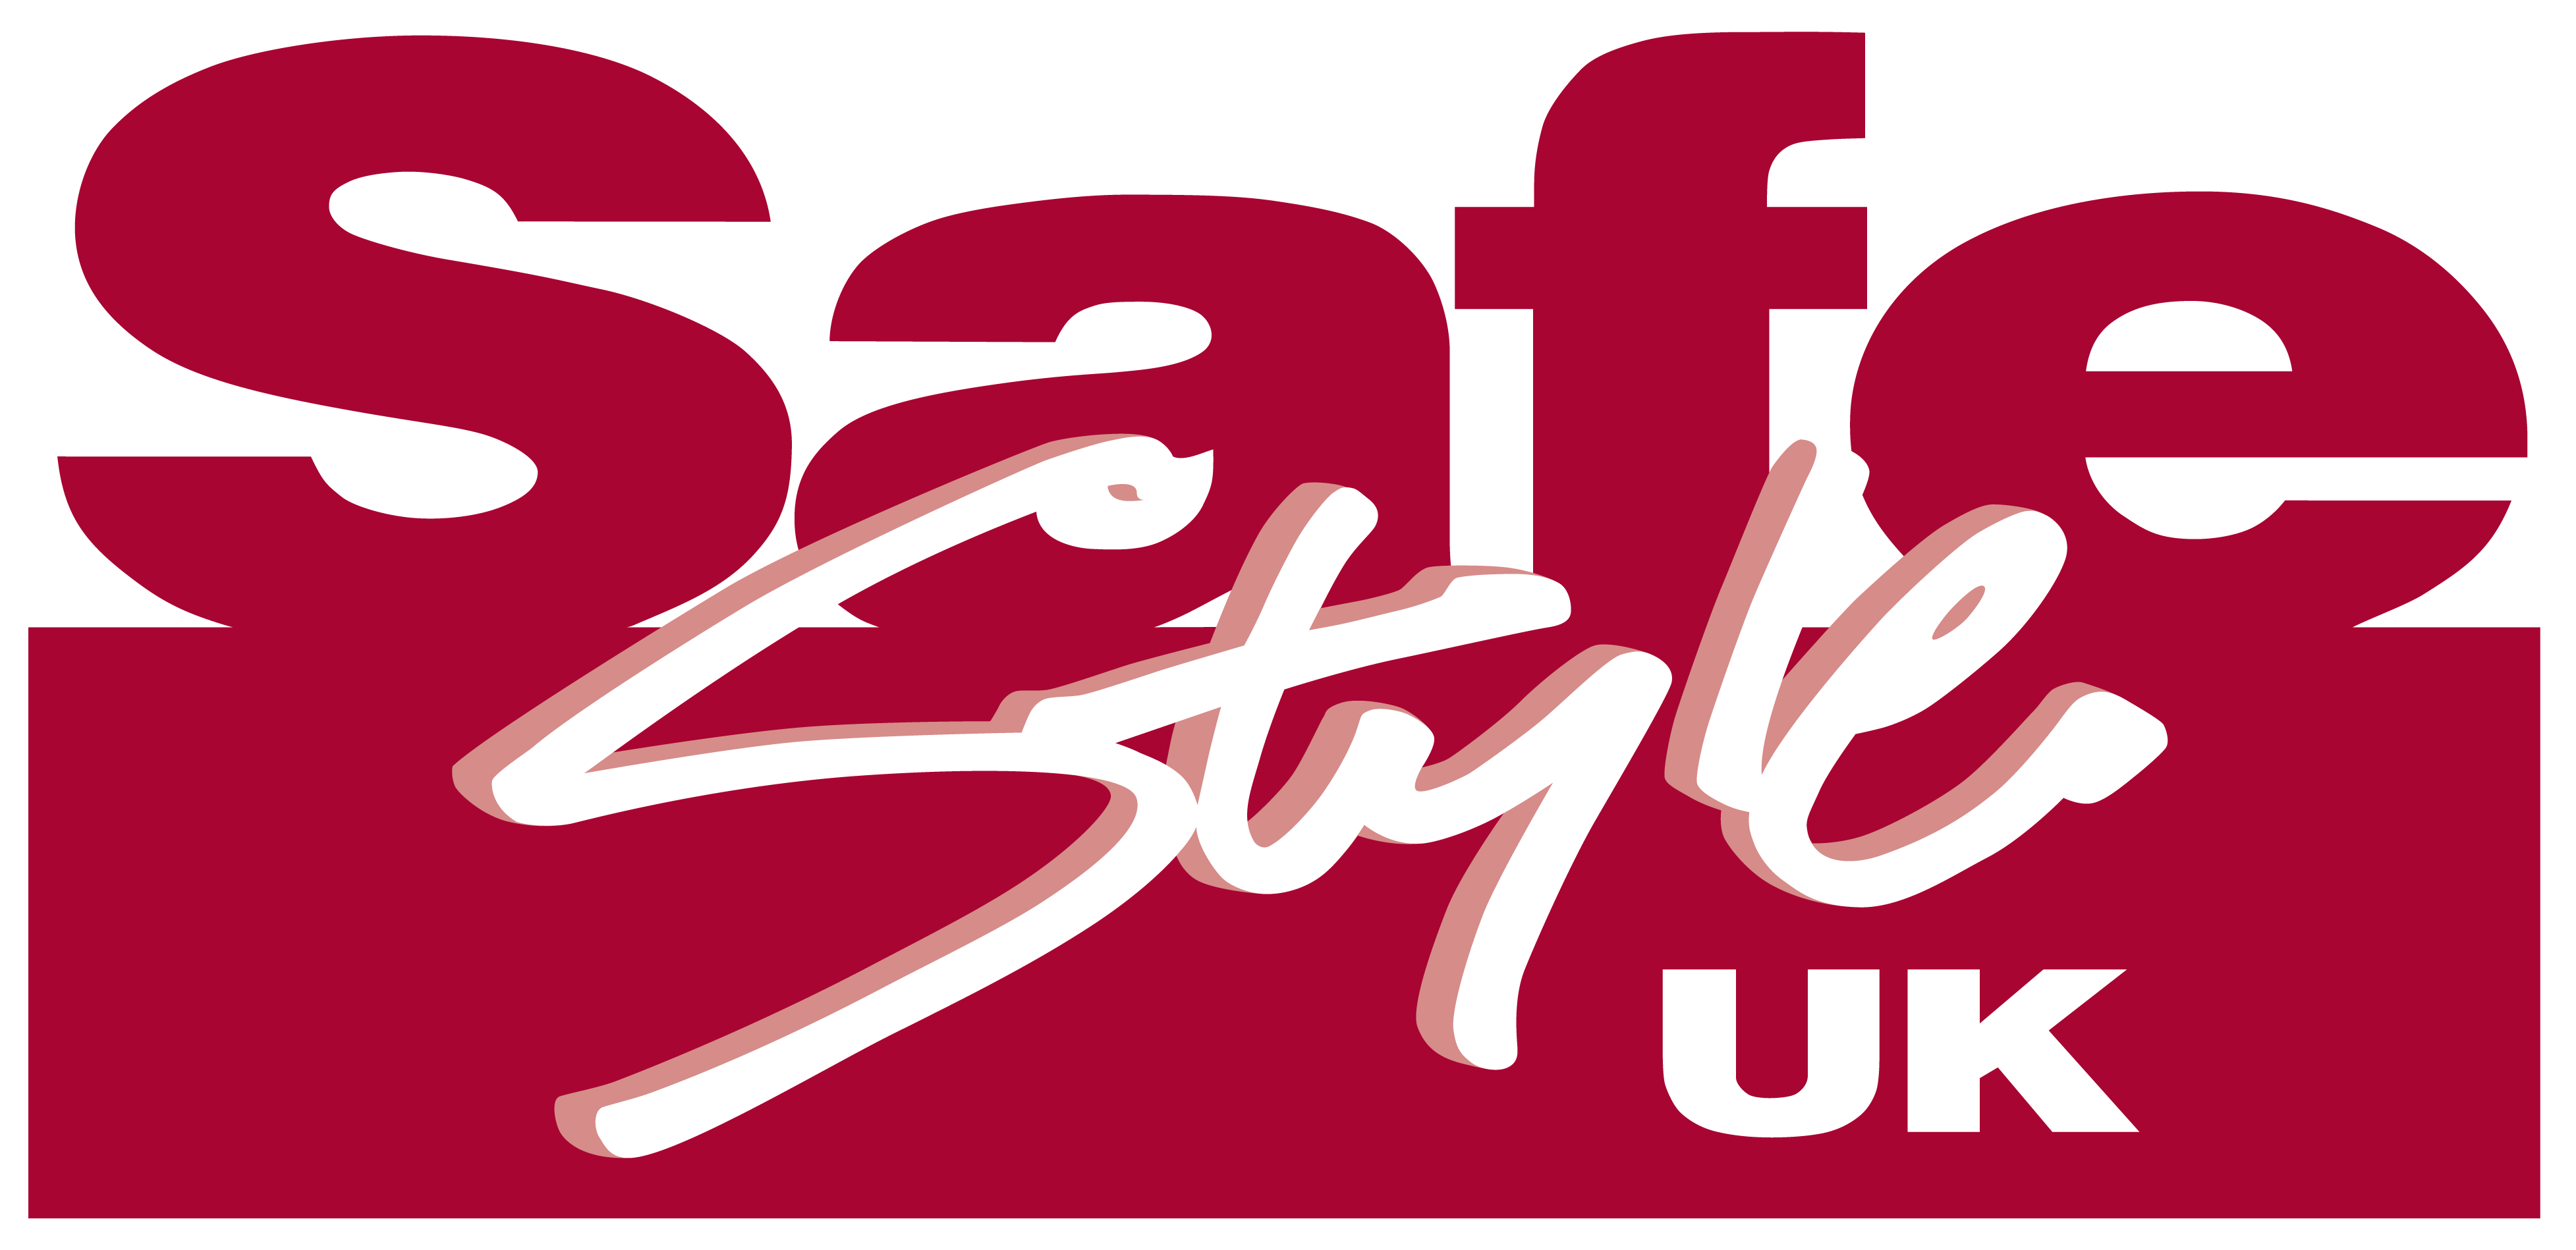 Safestyle Uk - Safestyle Uk Logo (3910x1898)